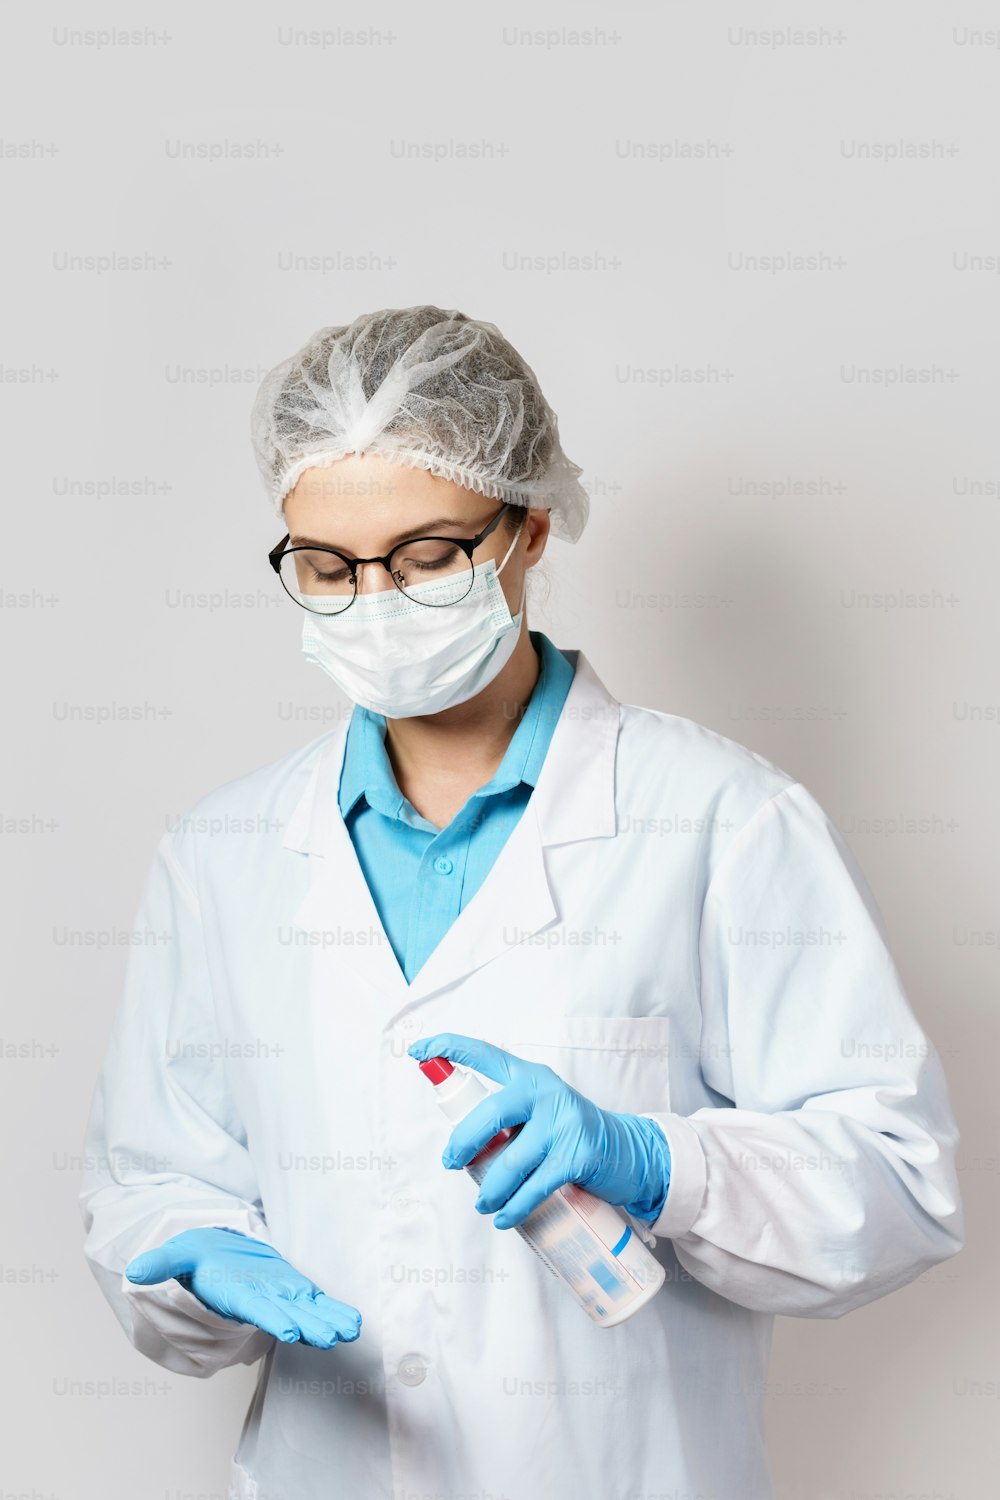 La joven doctora realiza una desinfección adicional de los guantes con un spray de alcohol